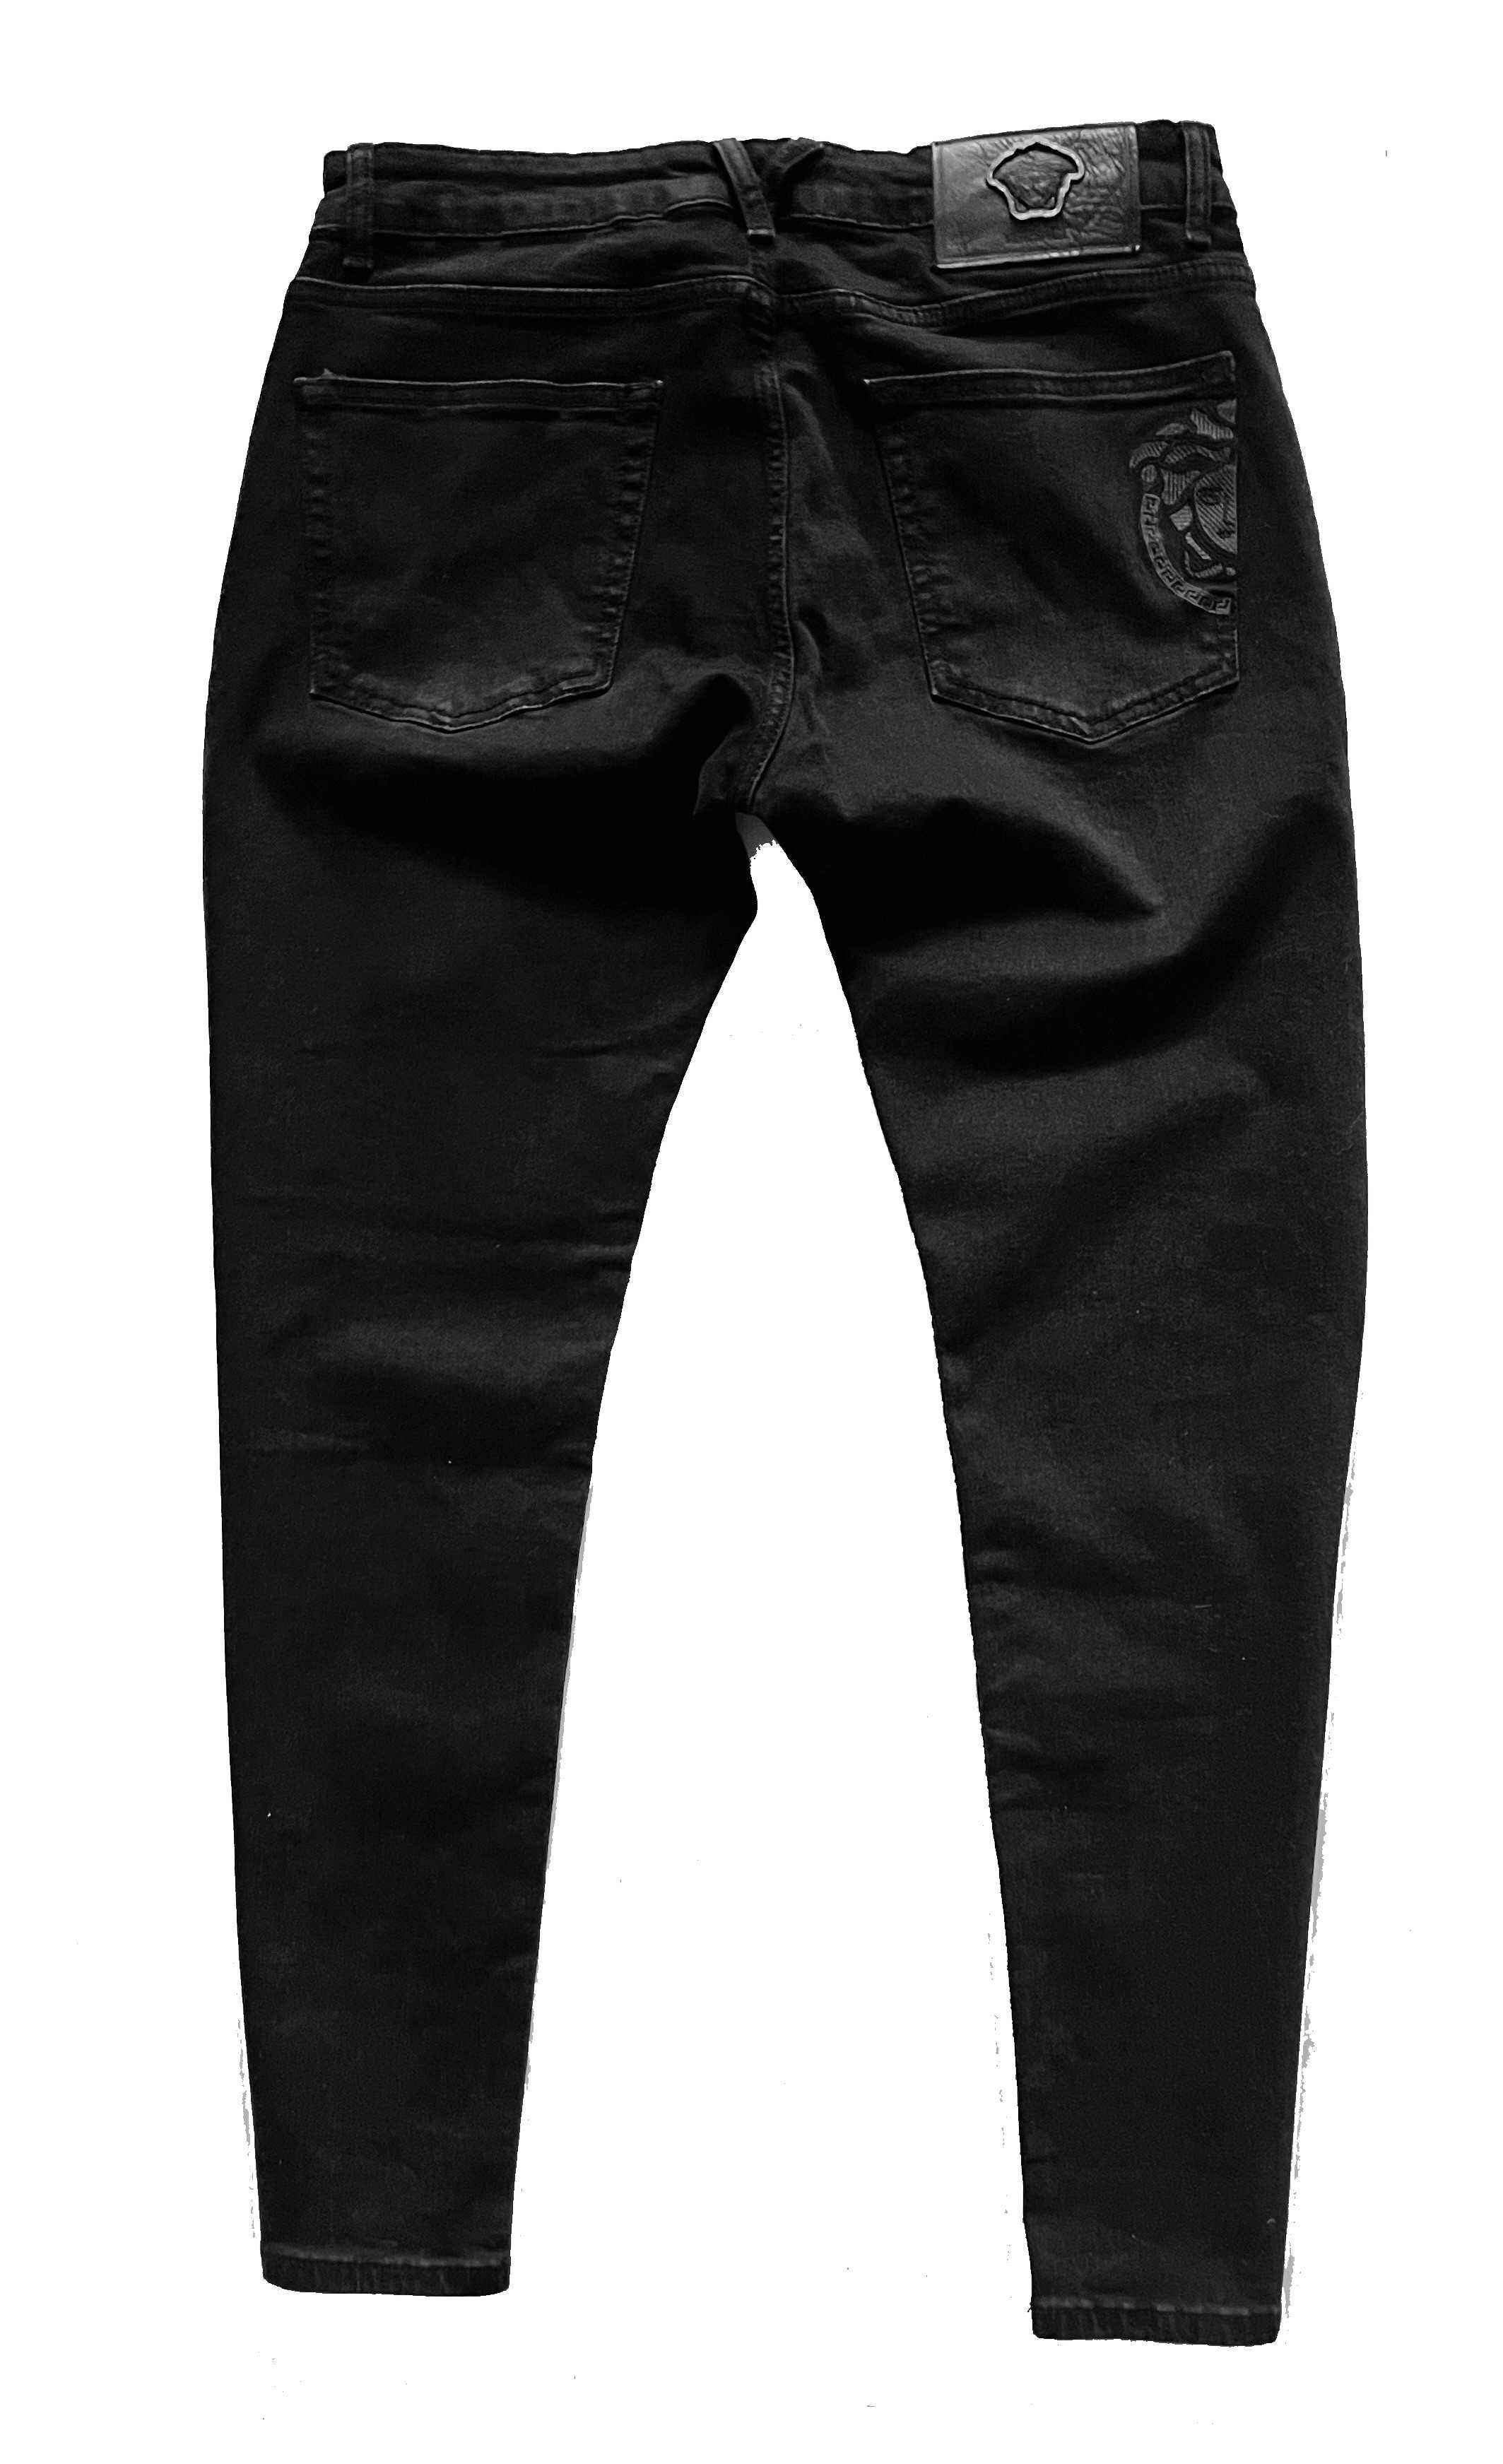 Versace spodnie jeansowe czarne rozm XL 36 jeans